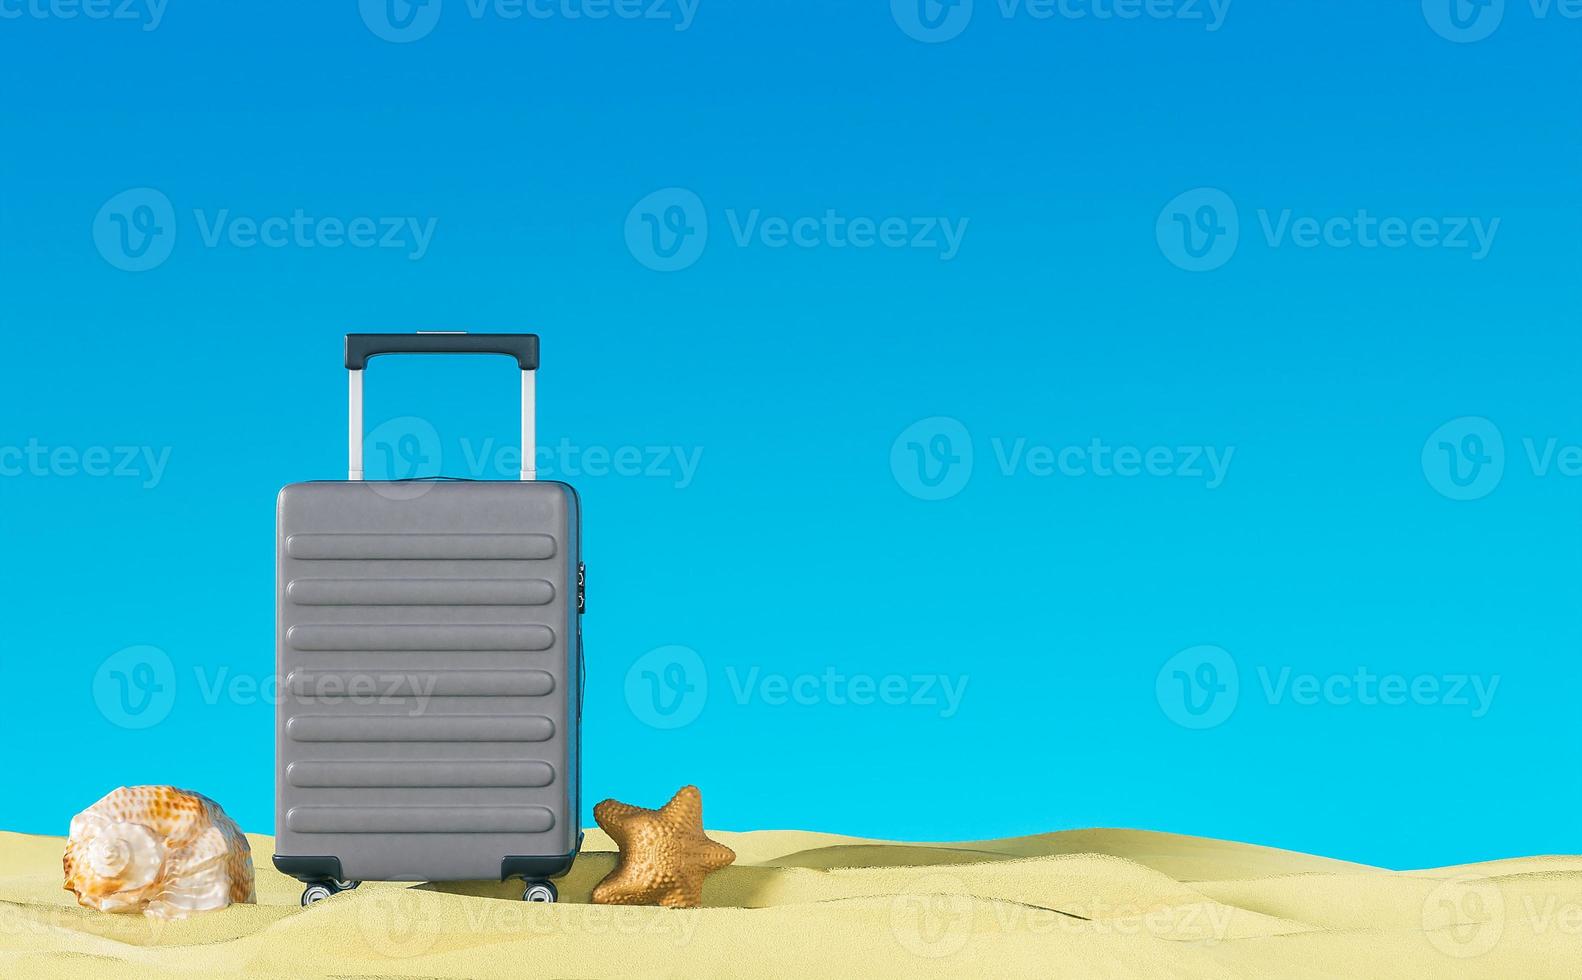 exhibición de equipaje de vacaciones de verano azul en el lado de la playa en arena amarilla fondo de diseño de banner de viaje imagen de representación 3d foto